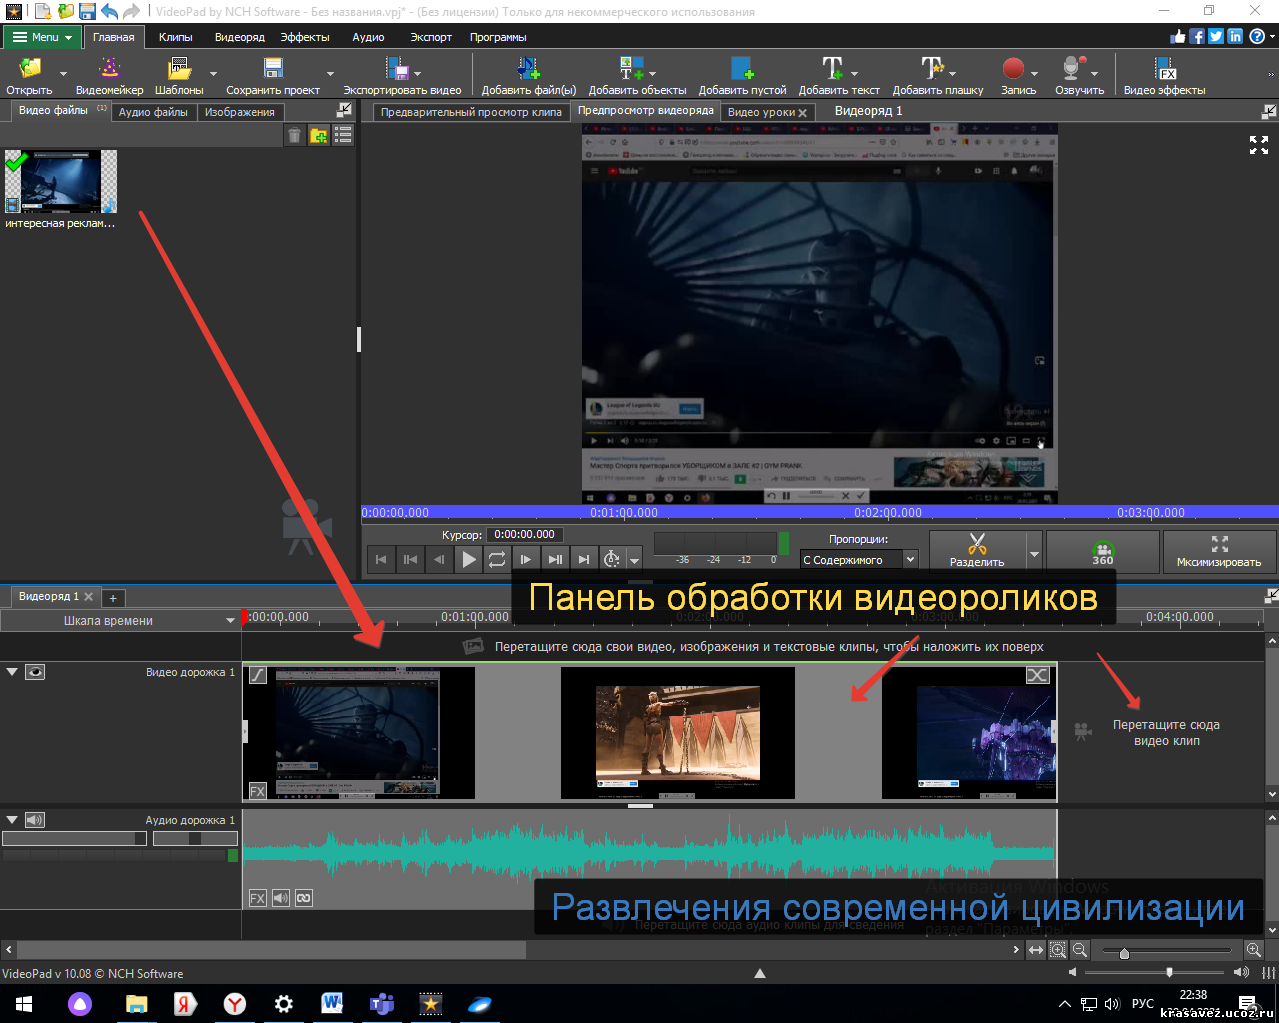 Монтирование видео на русском. Какие приложения нужны для монтировки видео. Стоковые видео для монтажа.